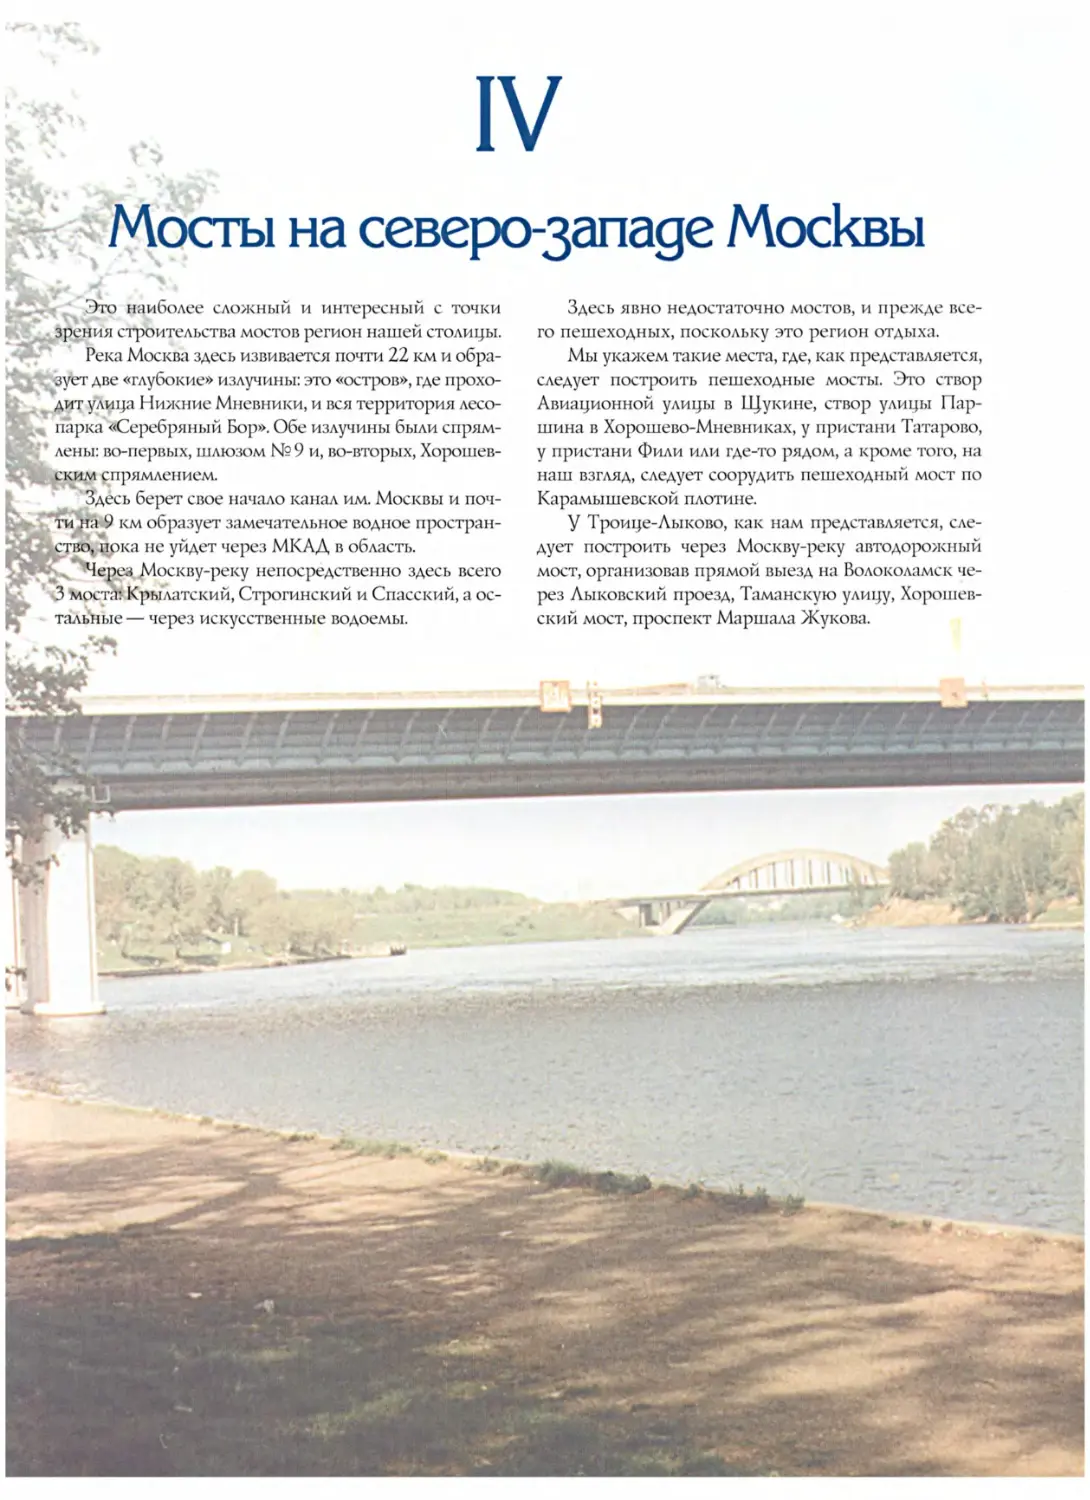 IV. Мосты на северо-западе Москвы